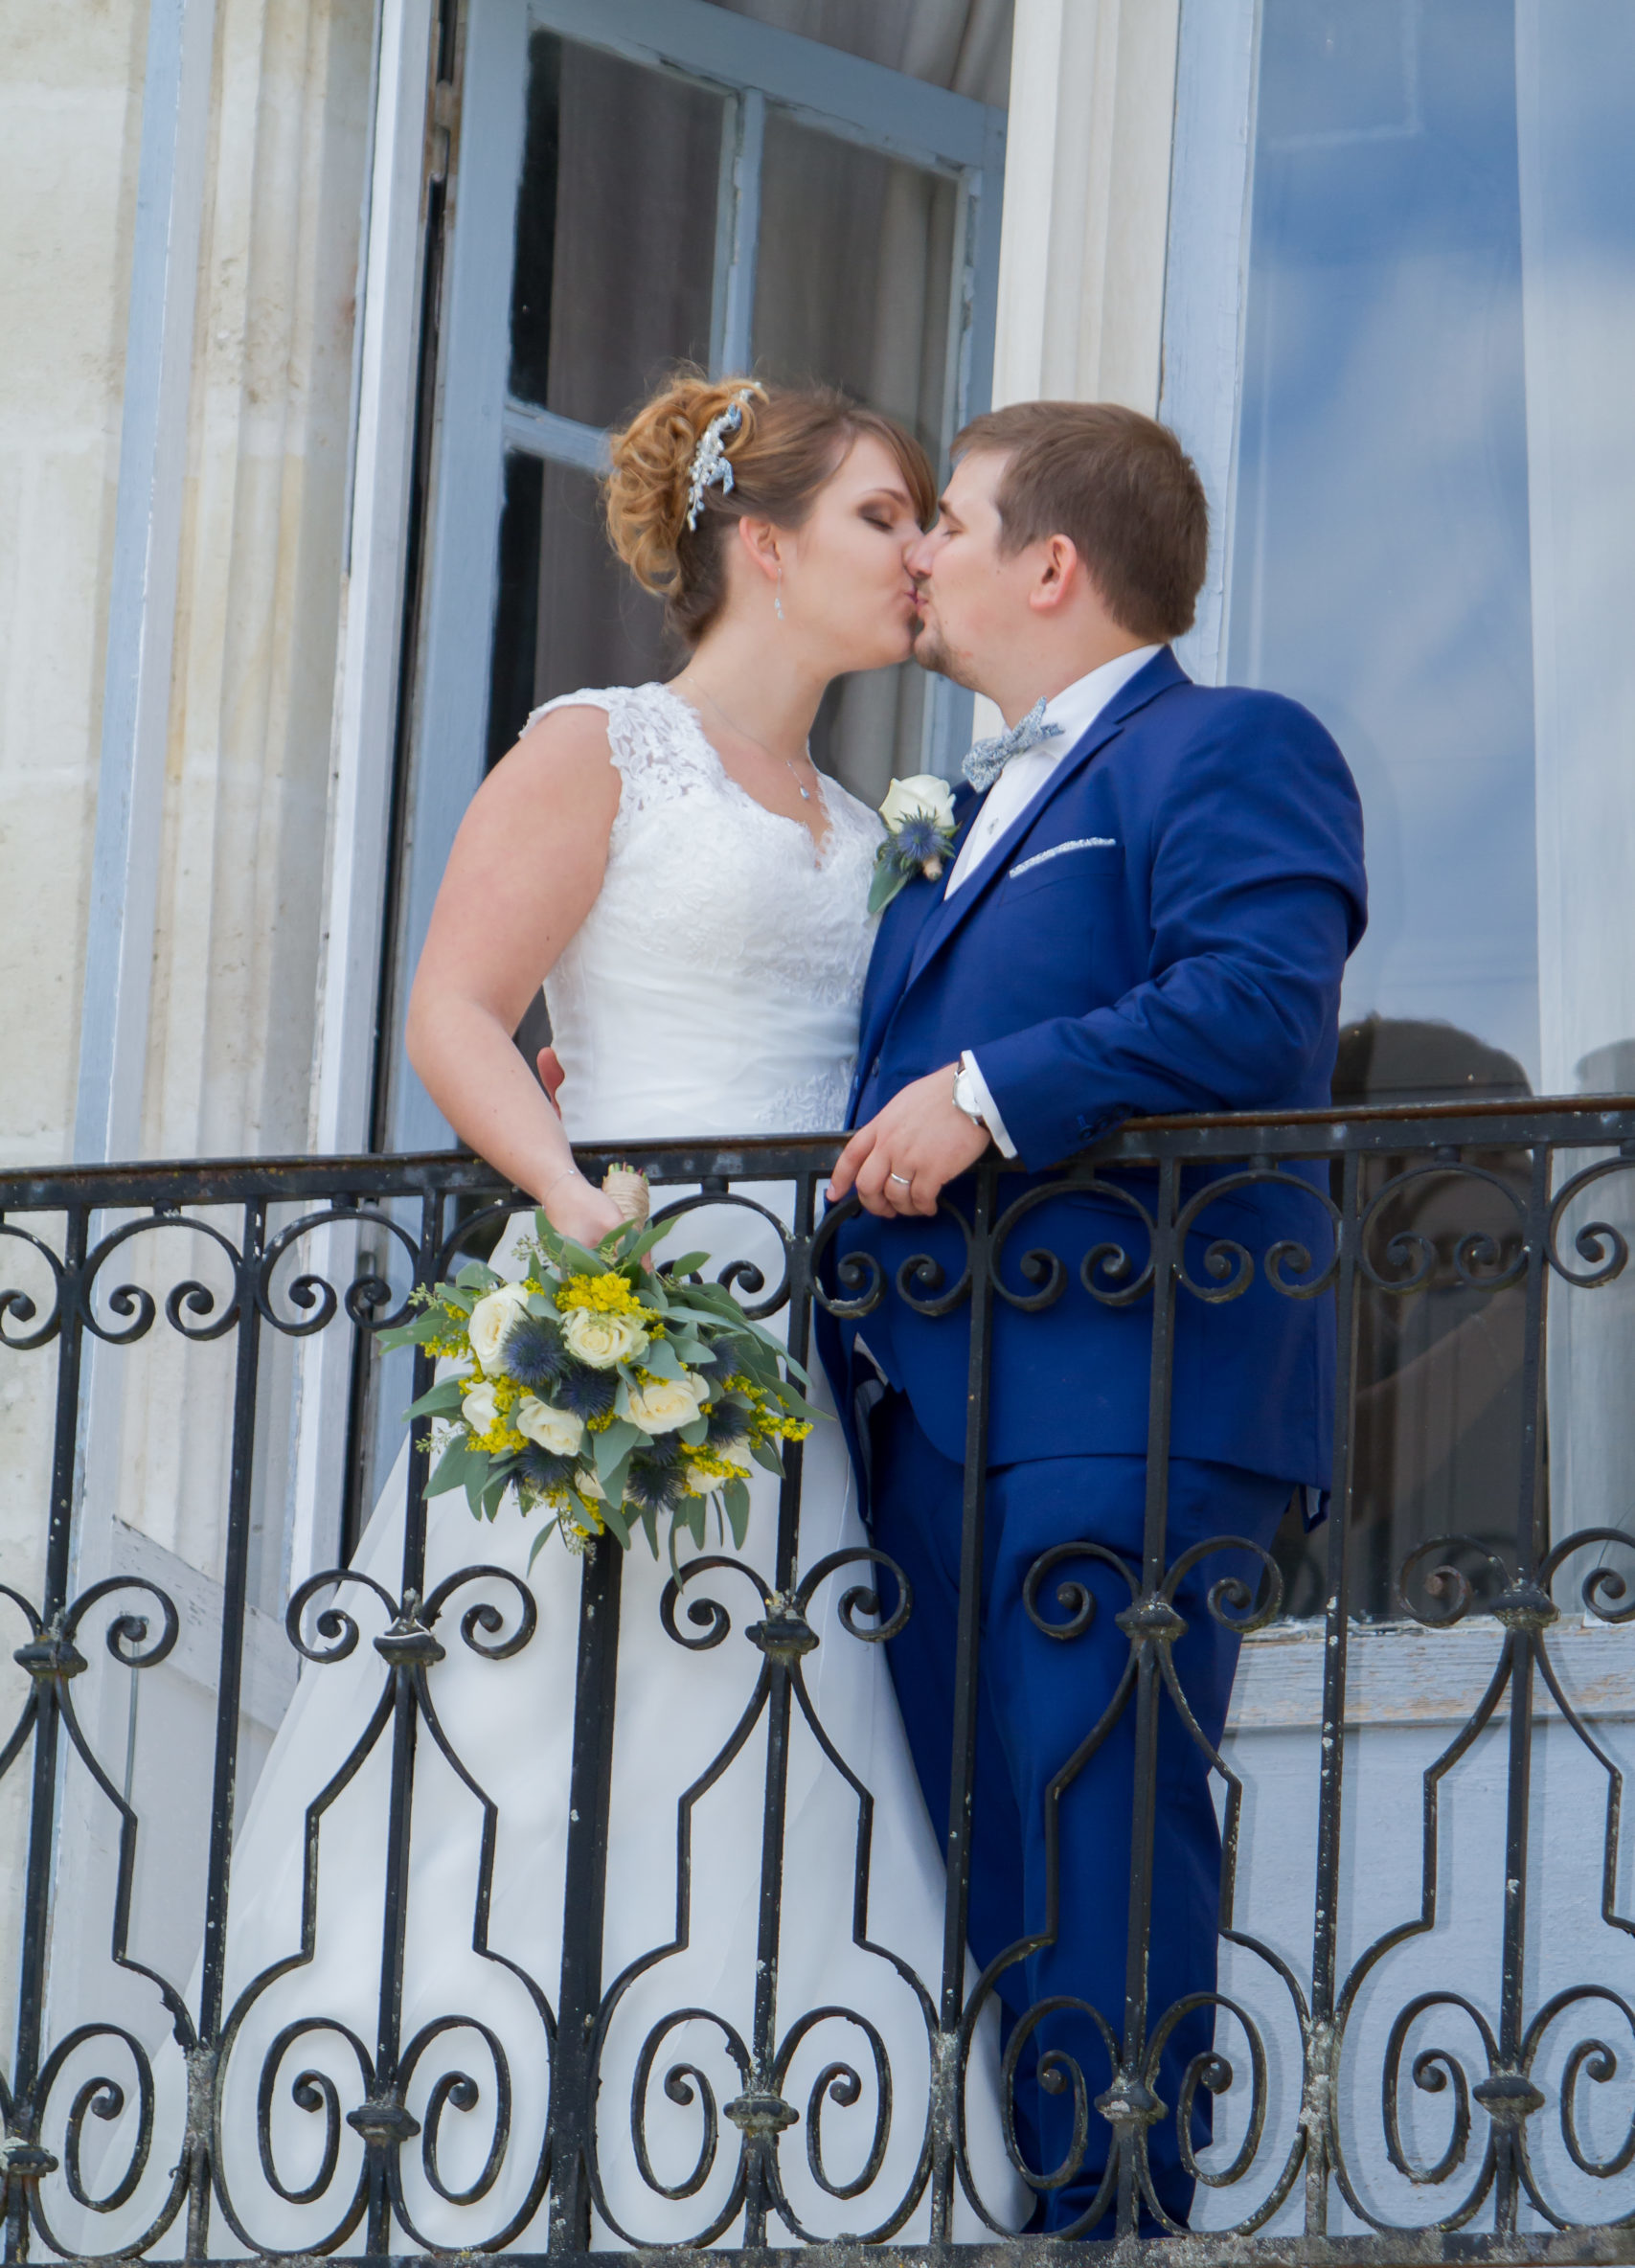 Mariage A&J - Les mariés s'embrassent sur le balcon - C&D Events Wedding planner Oise